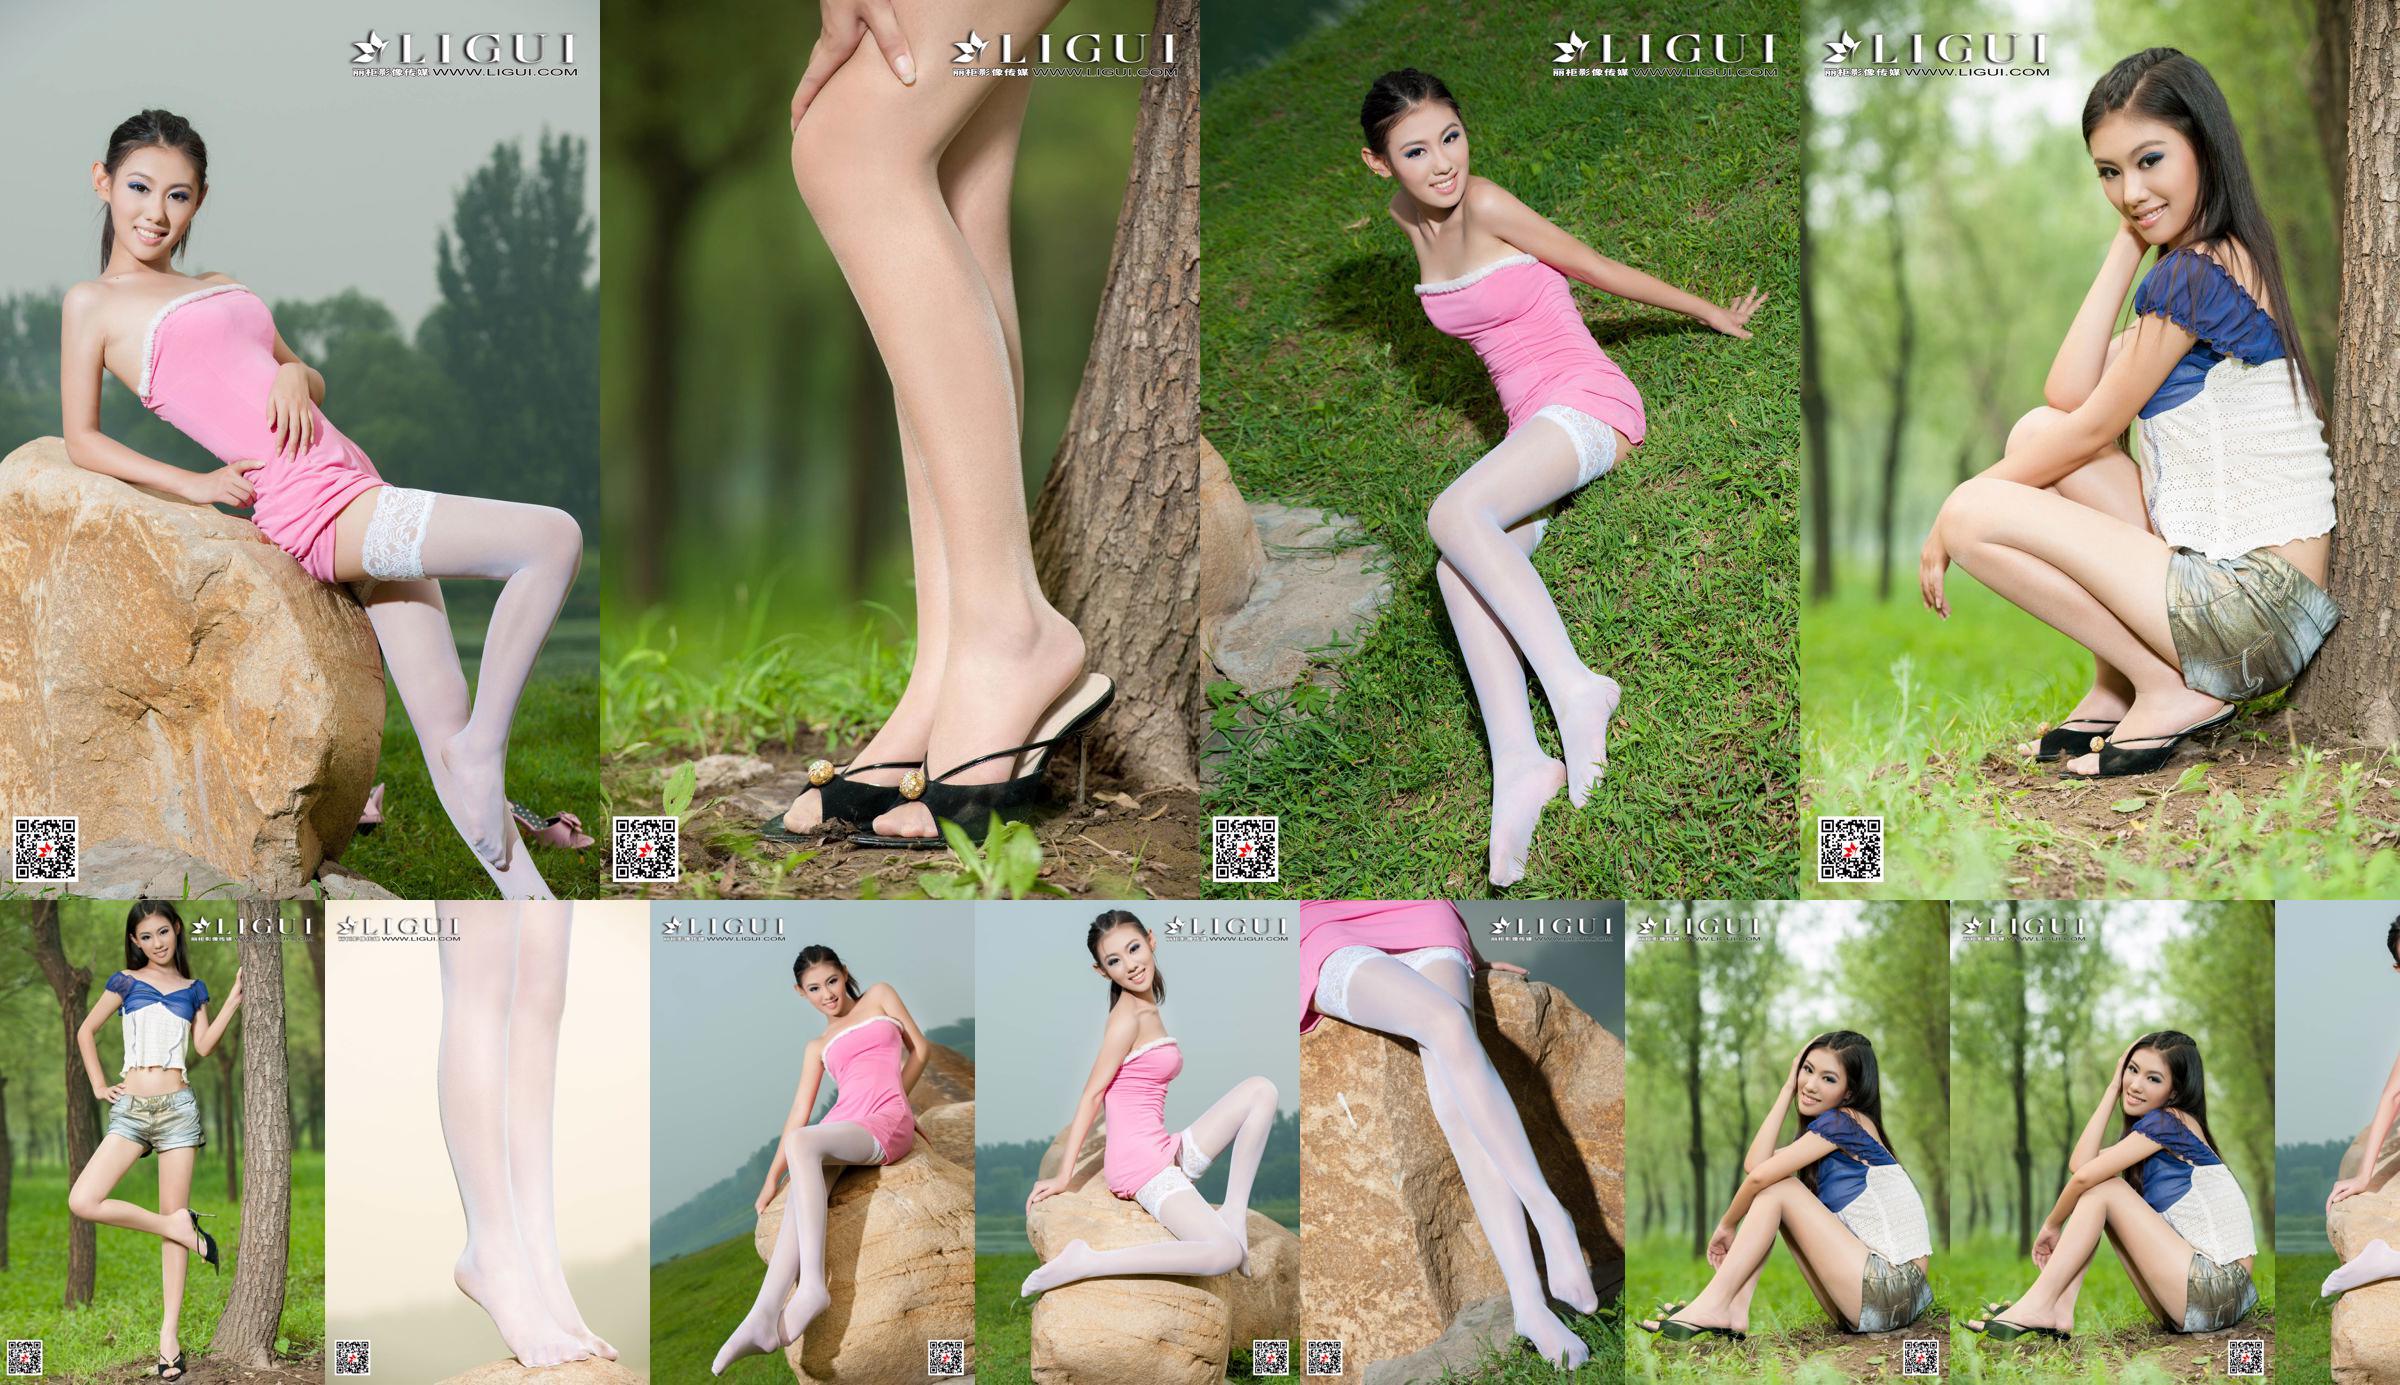 [丽 柜 Ligui] Model Wei Ling "Long Leg Girl" Schöne Beine No.94ff6c Seite 3